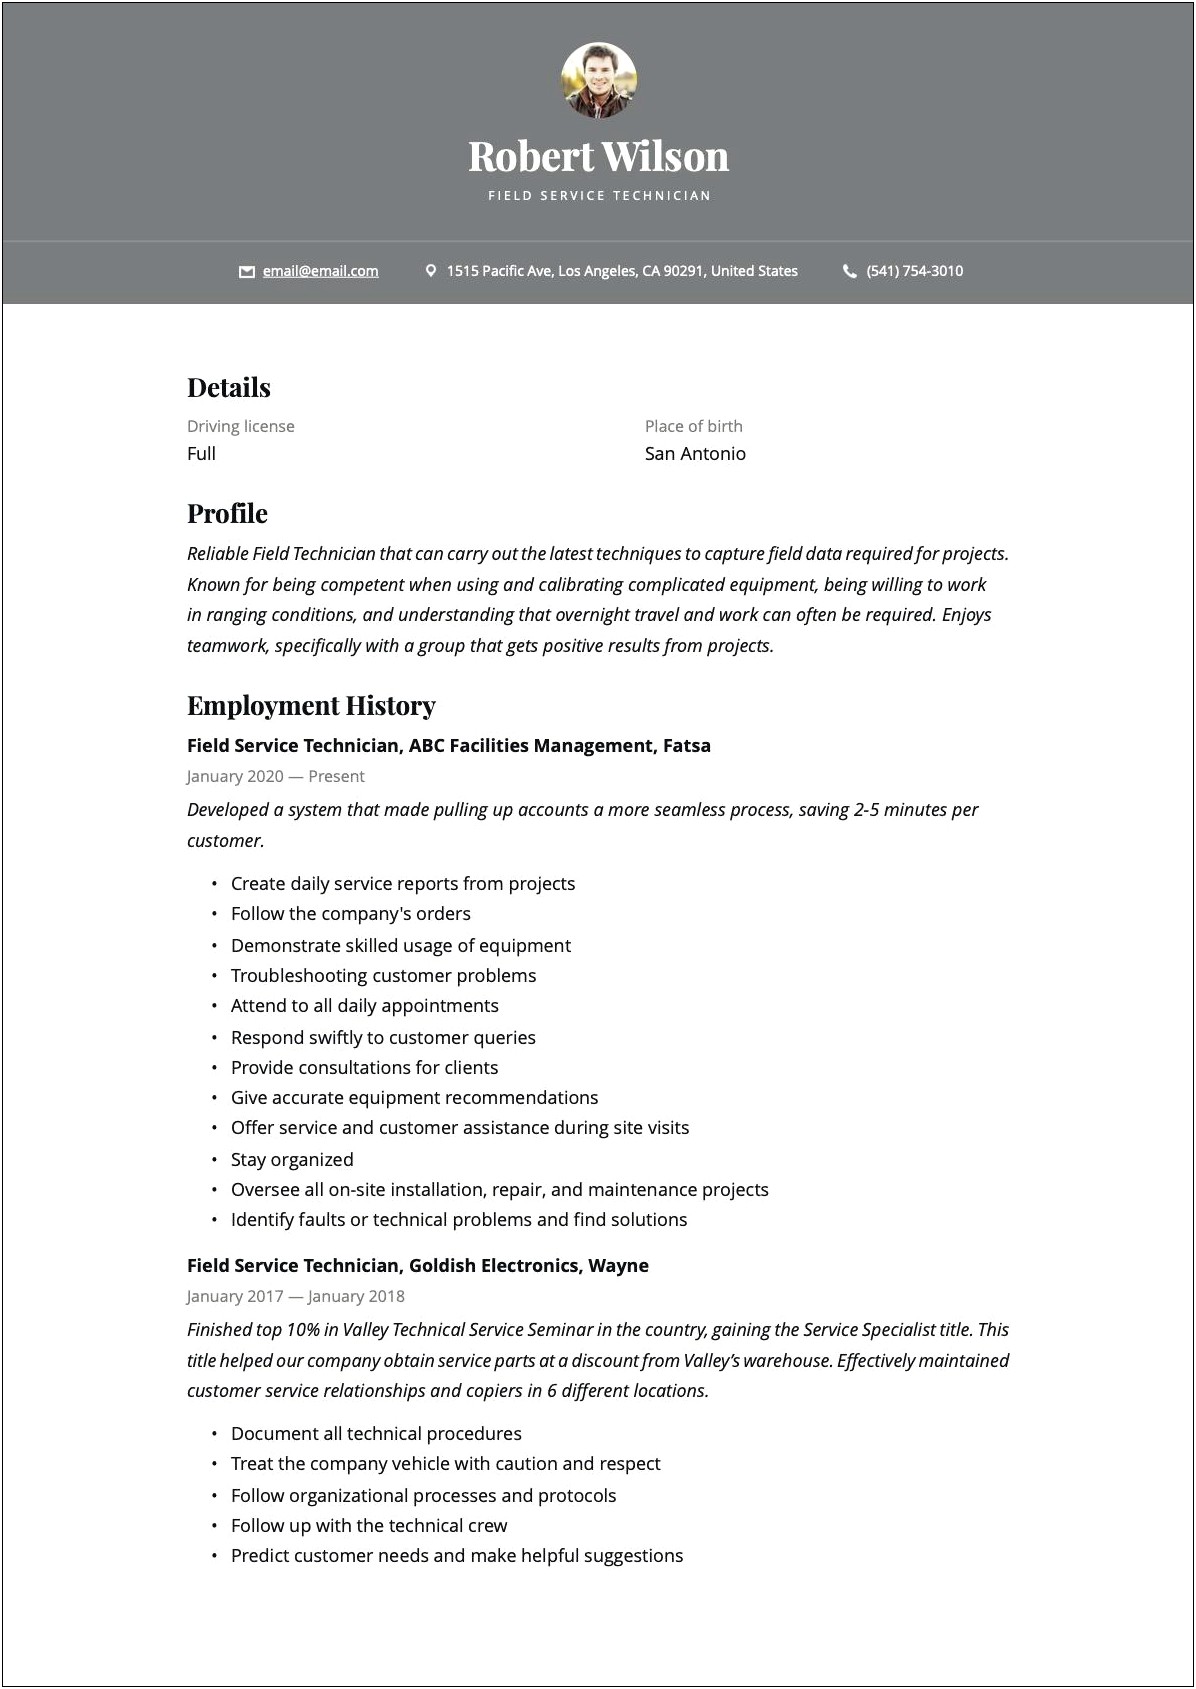 Field Service Technician Job Description Resume